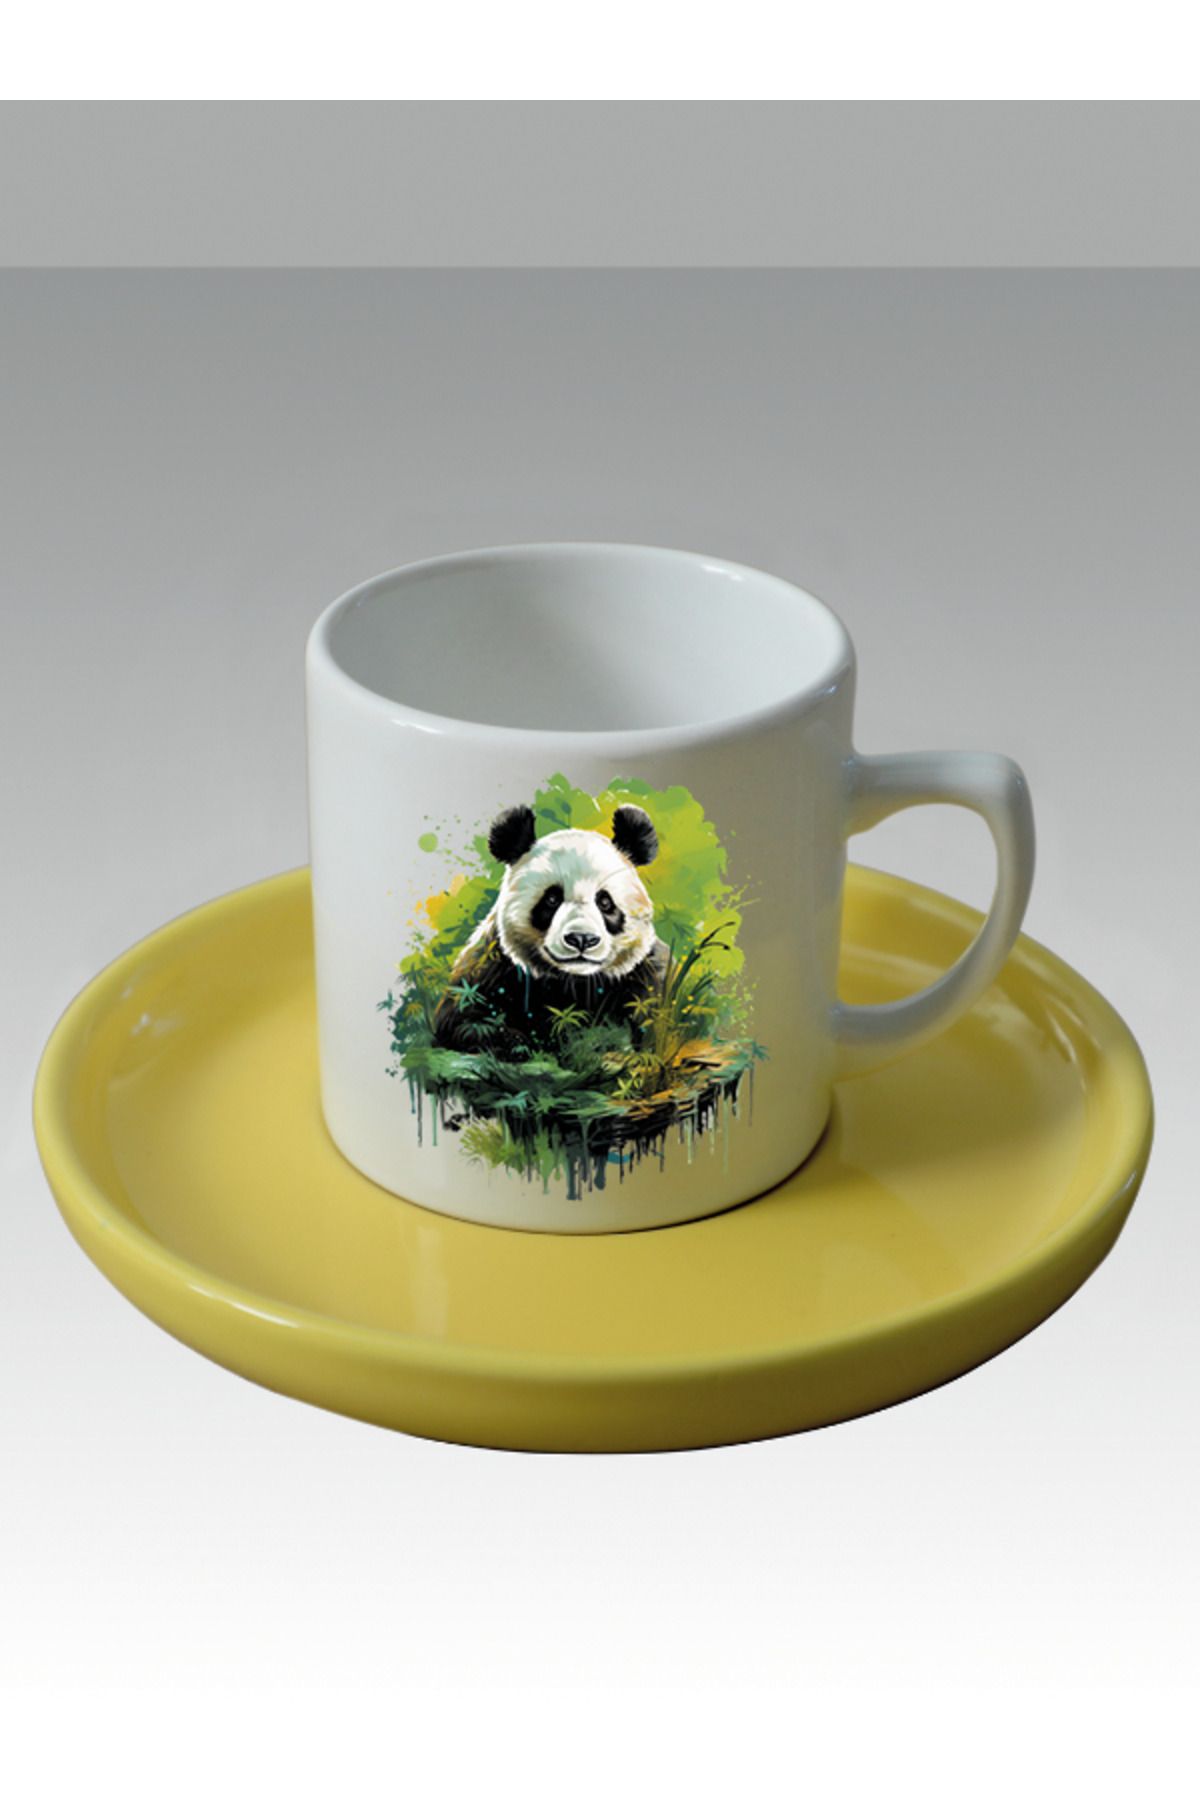 lili hediyelik 6'lı Fincan Yeşiller Içinde Panda Baskılı Türk Kahvesi Fincanı - Hediye Seramik Kupa Bardak